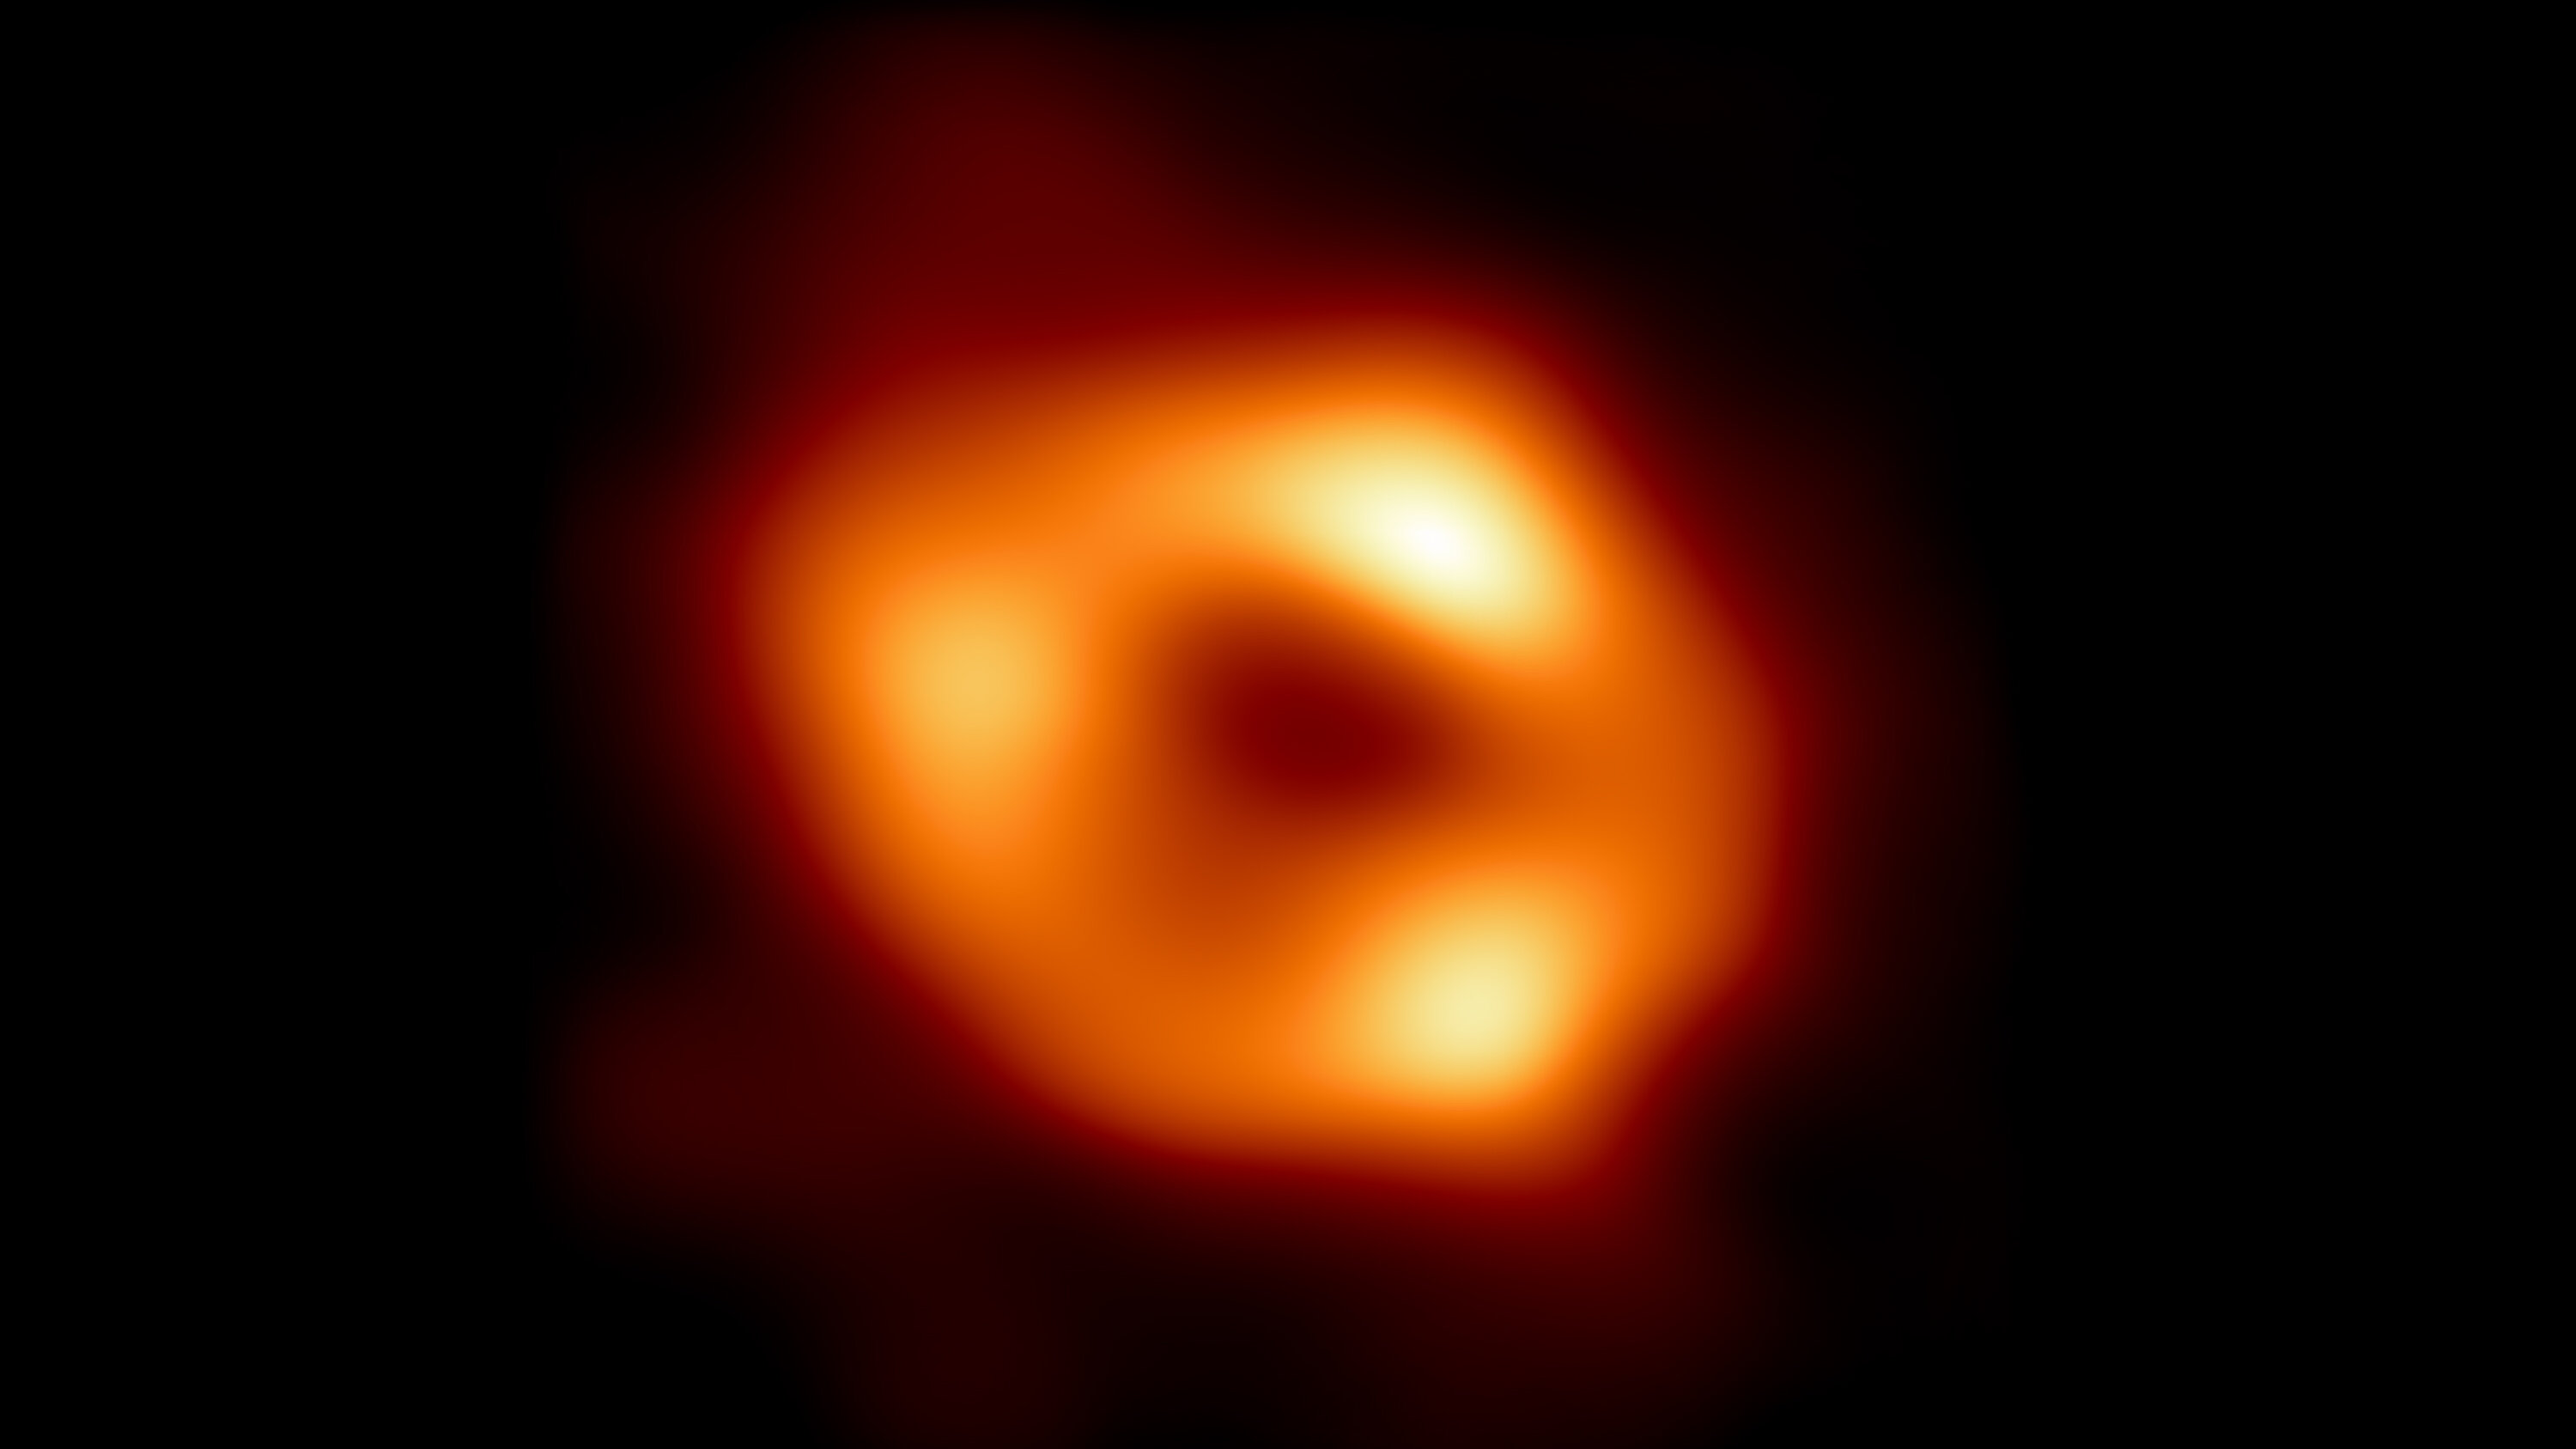 bb hhh <p>На протяжении многих лет ученые мечтали заглянуть в сердце Млечного Пути. Удивительно, но их мечта наконец сбылась: с помощью сети обсерваторий проекта „Телескоп горизонта событий“ (EHT) астрономы опубликовали первое в истории изображение Стрельца А* - сверхмассивной черной дыры в центре Галактики. Ее масса превышает солнечную в 4 миллиона раз. Этот космический монстр расположился на расстоянии около 26 тысяч световых лет от Земли и технически увидеть его невозможно. Но так как черные дыры притягивают к себе все объекты поблизости, они окружены светящейся уничтоженной материей, которая кружится над пропастью со скоростью, близкой к скорости света.